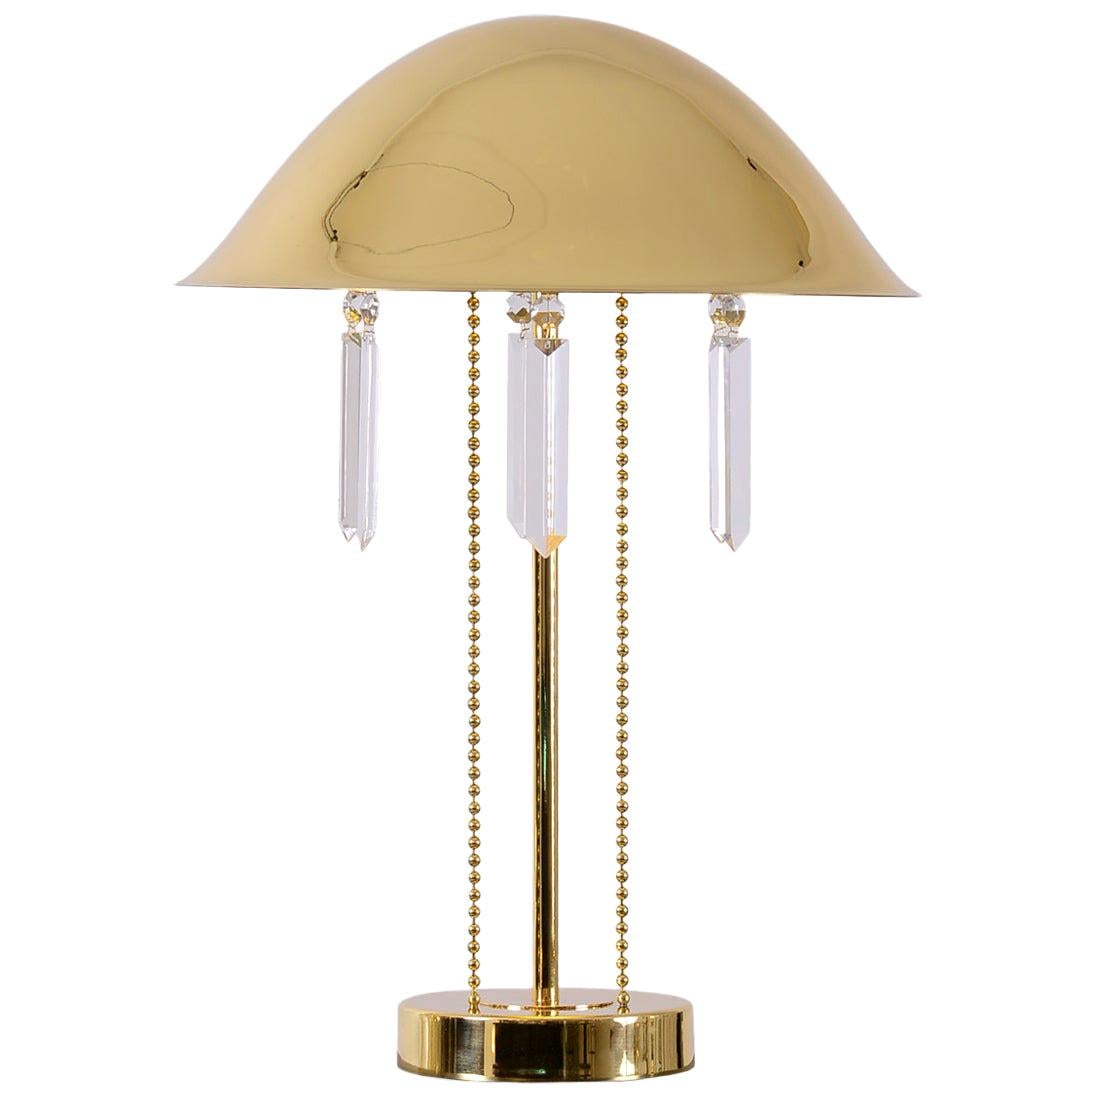 Jugendstil Table Lamp, Matches the Josef Hoffmann Chandelier, Re-Edition For Sale